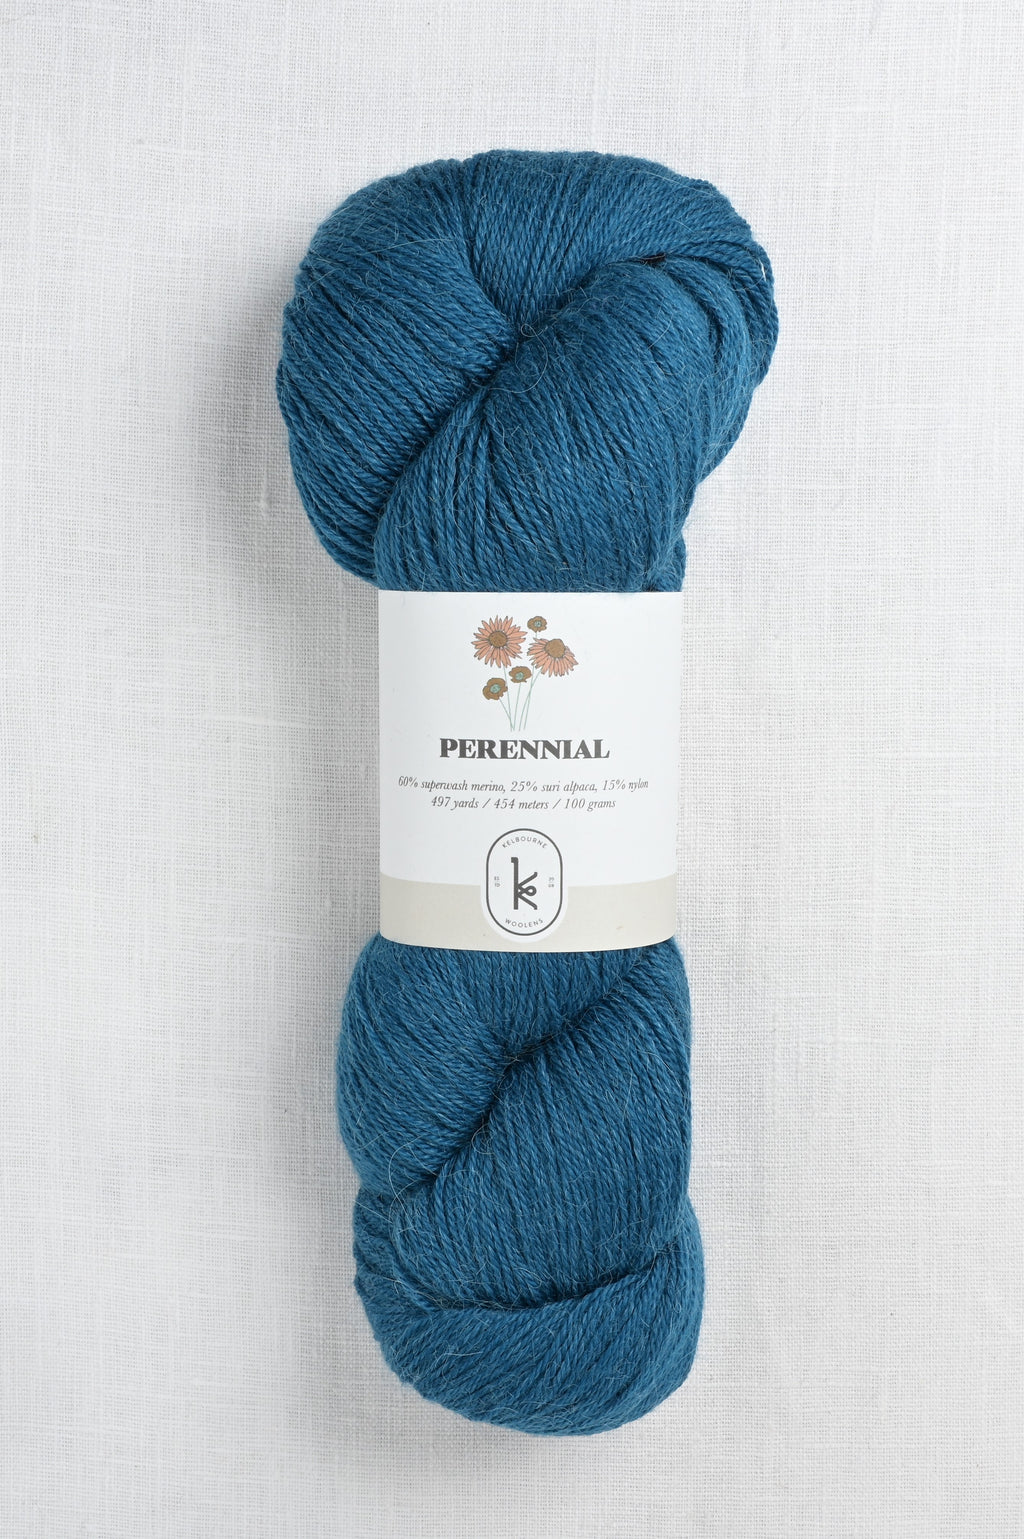 kelbourne woolens perennial 433 dark teal